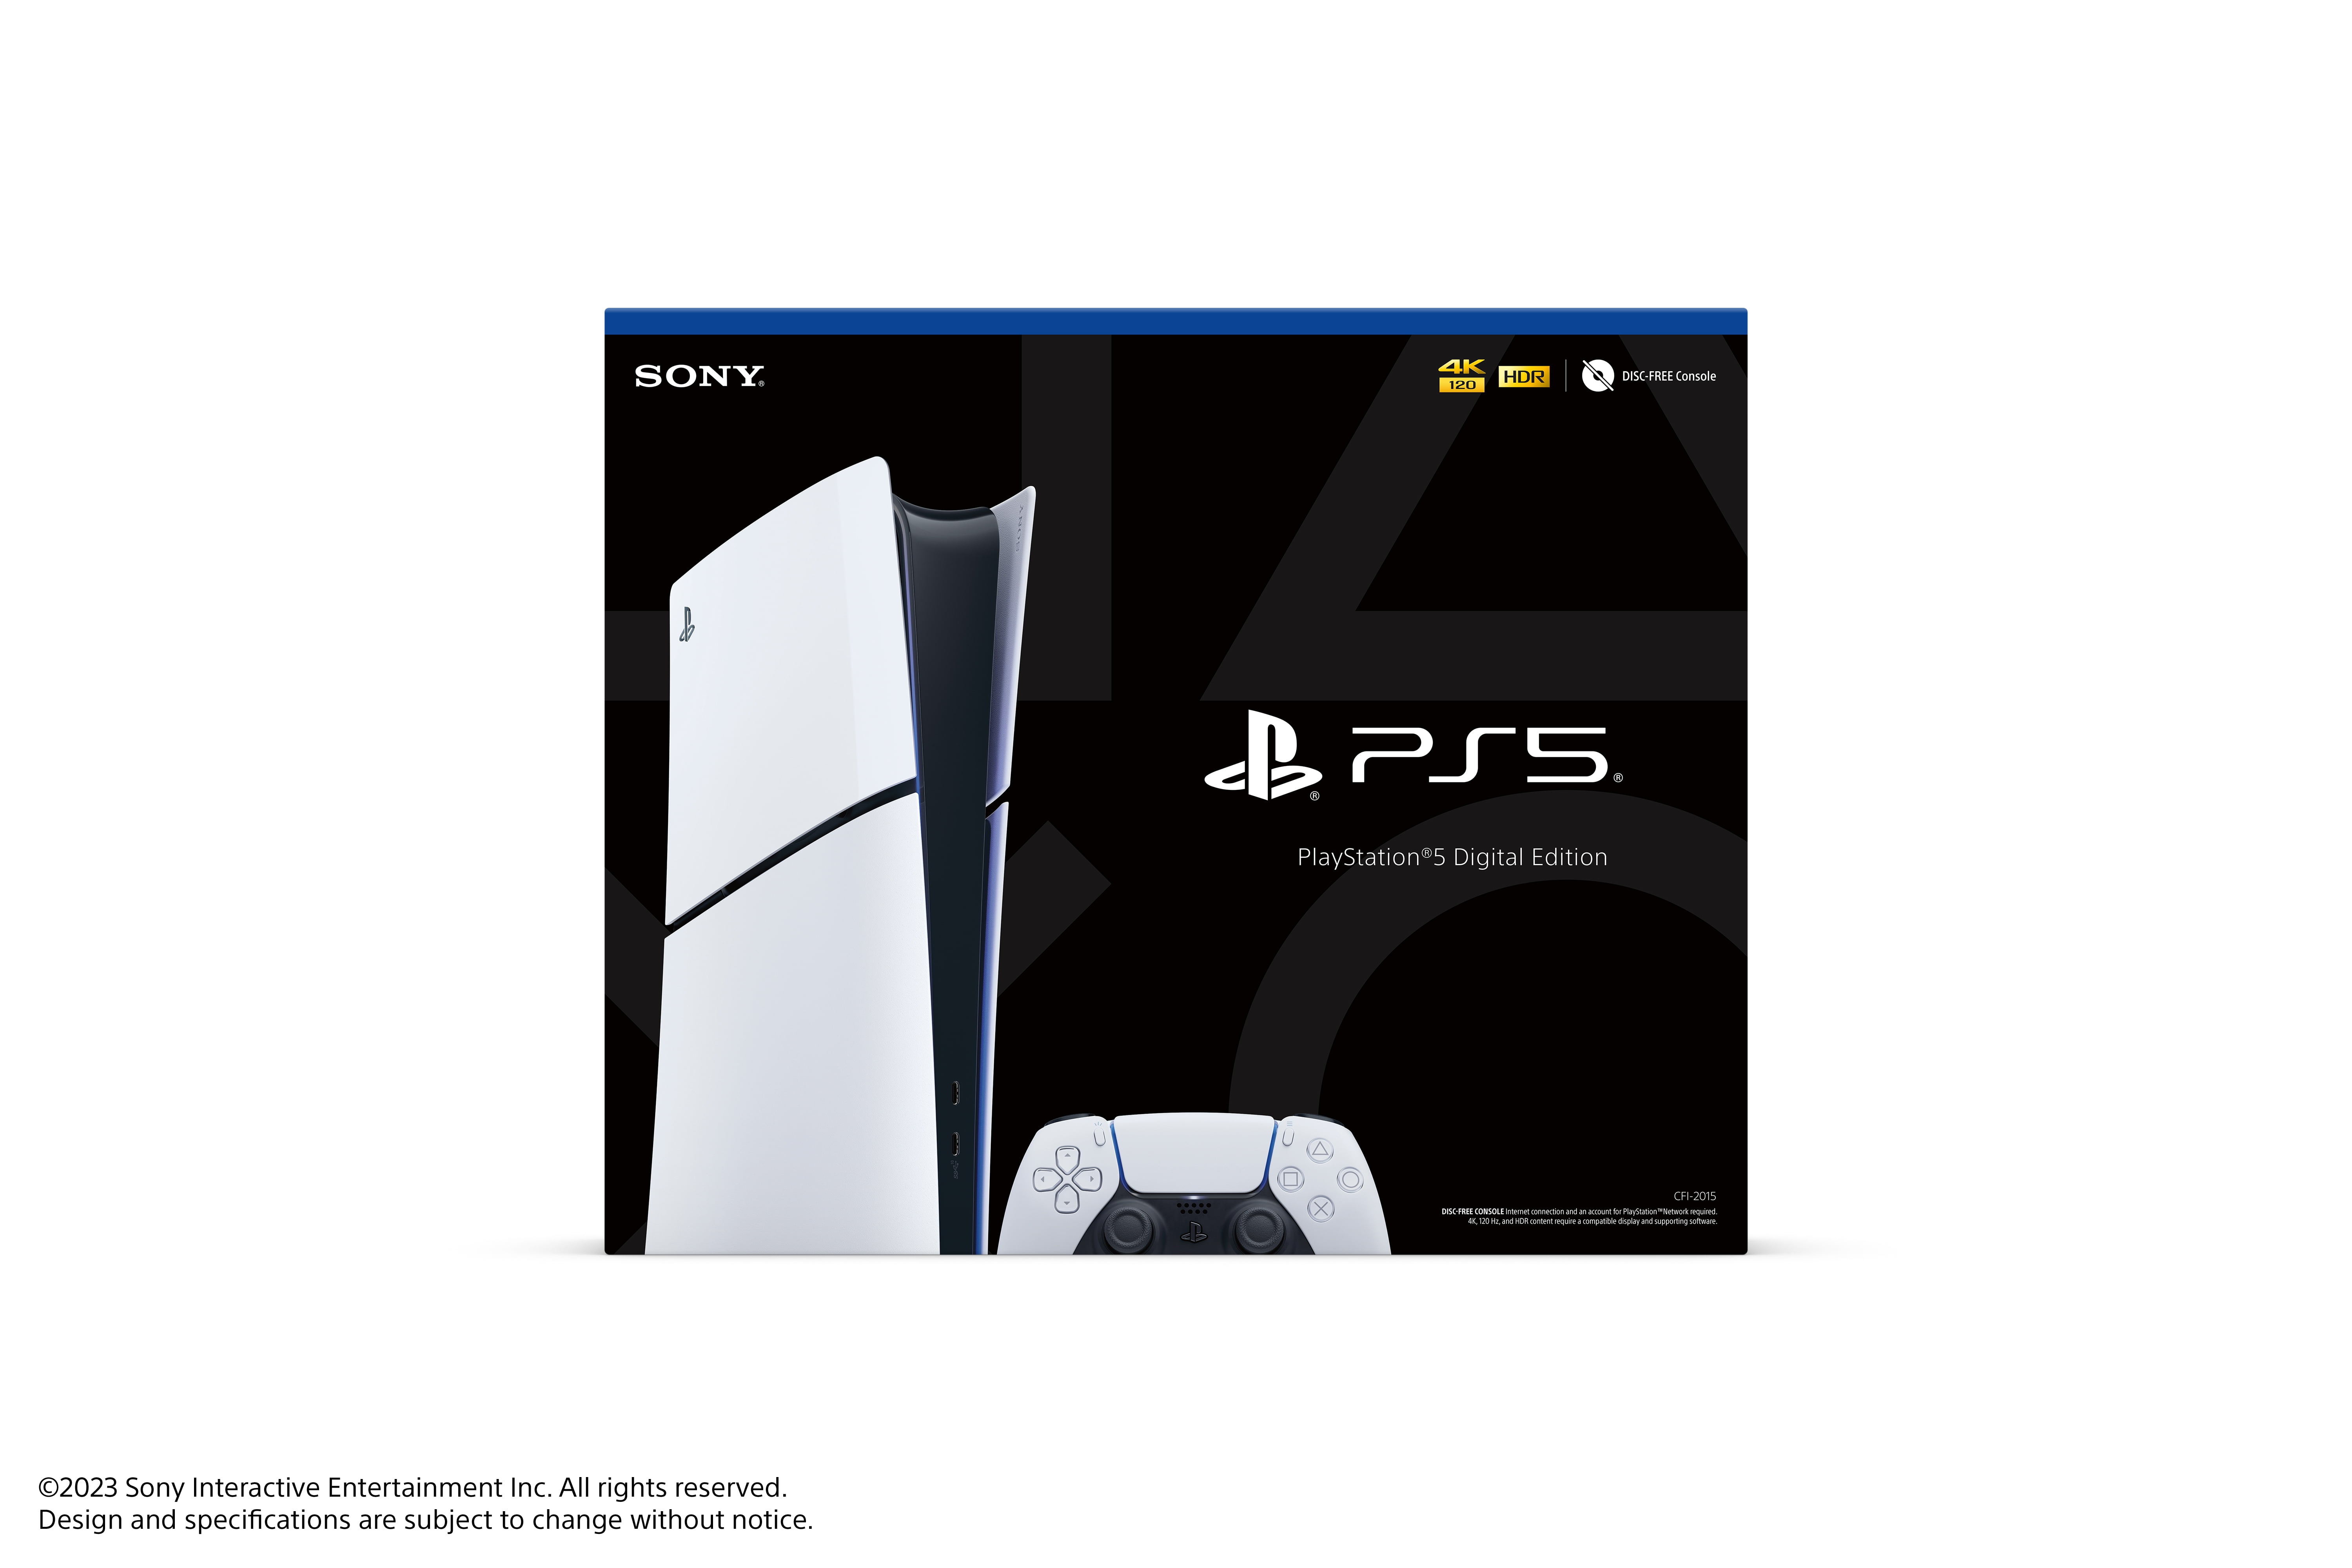 Sony PlayStation 5 (PS5) Digital Console Slim - Walmart.com